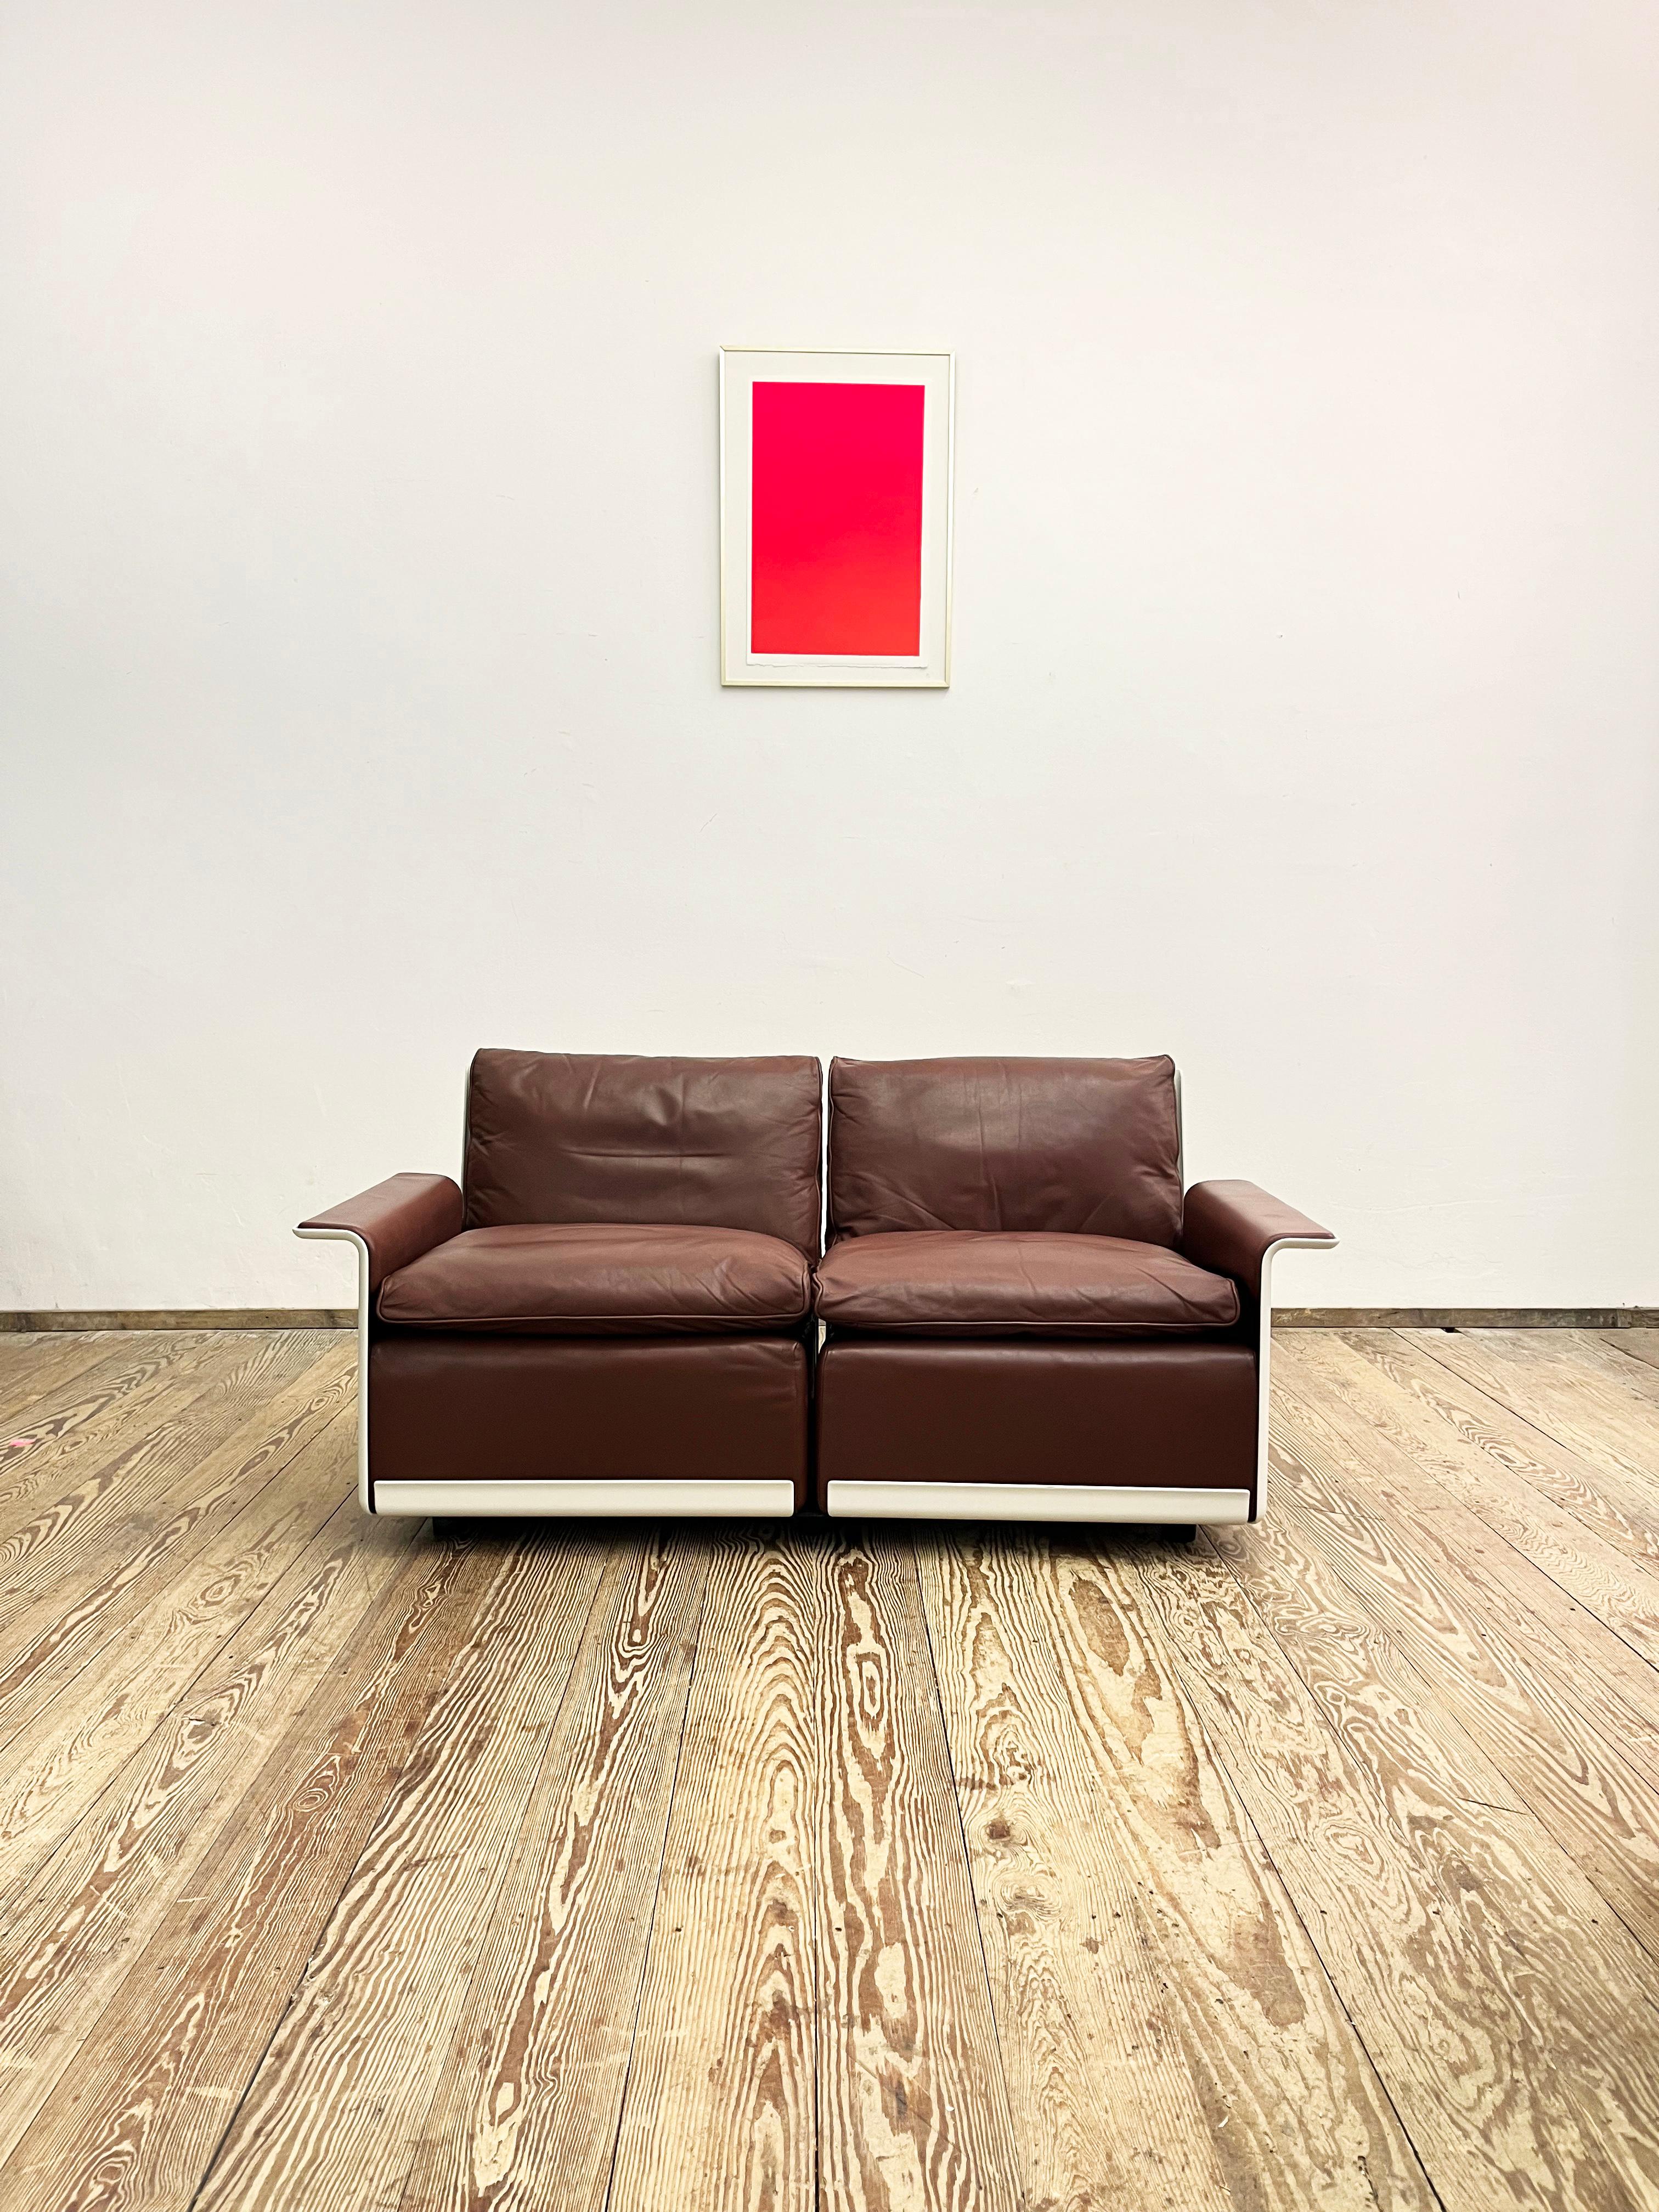 Abmessungen ca. 153 x 70 x 65 x 43 cm (BxTxHxSH)

Dieses formschöne und bequeme Sofa wurde vom deutschen Designer Dieter Rams in den 1960er Jahren für Vitsoe in Deutschland entworfen. Die Serie 620 ist ein System von Möbelteilen, aus denen sich